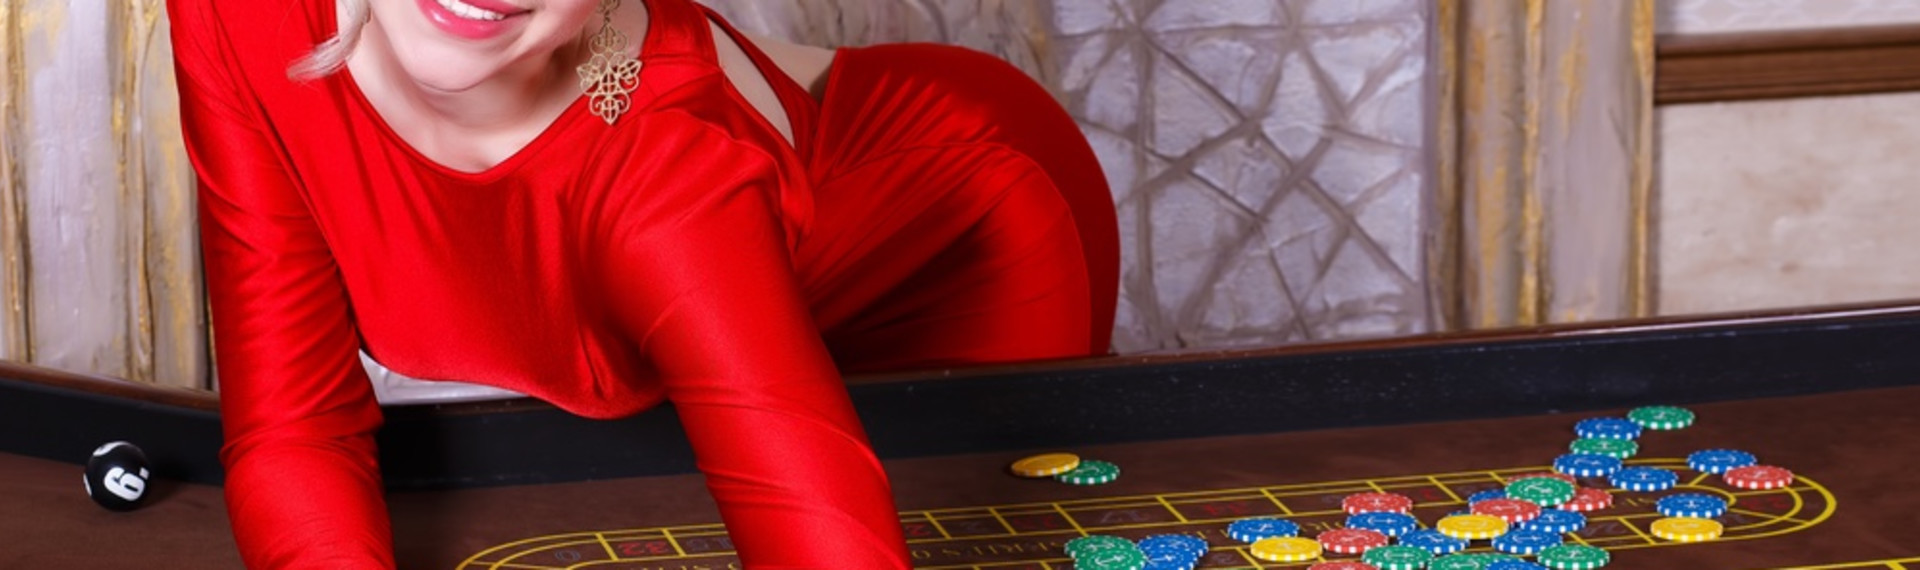 VIP Casino aften - Placer jeres bets på kasinoet i Prag!